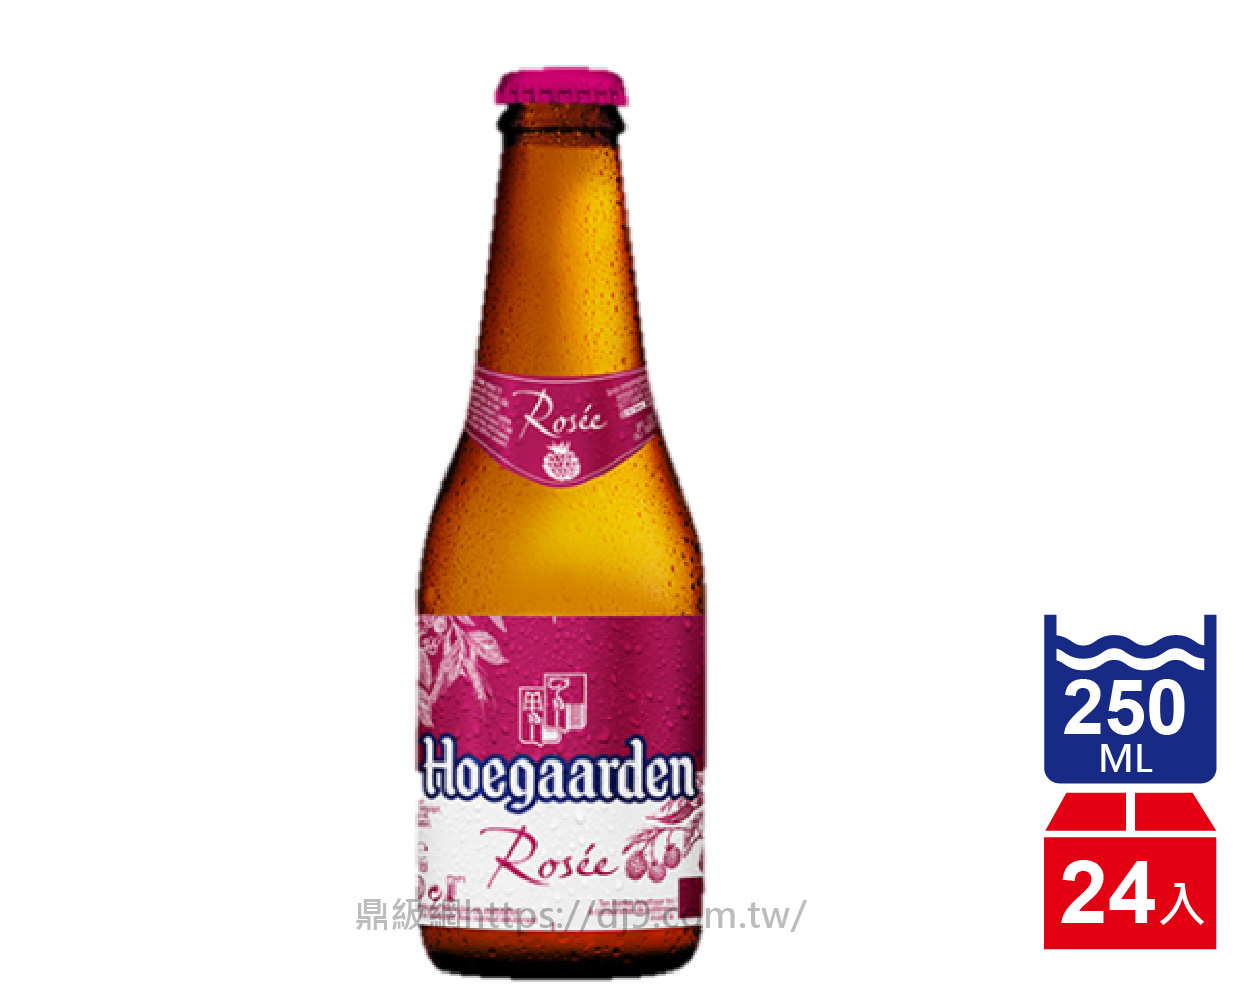 豪格登覆盆苺啤酒(250mlx24瓶)